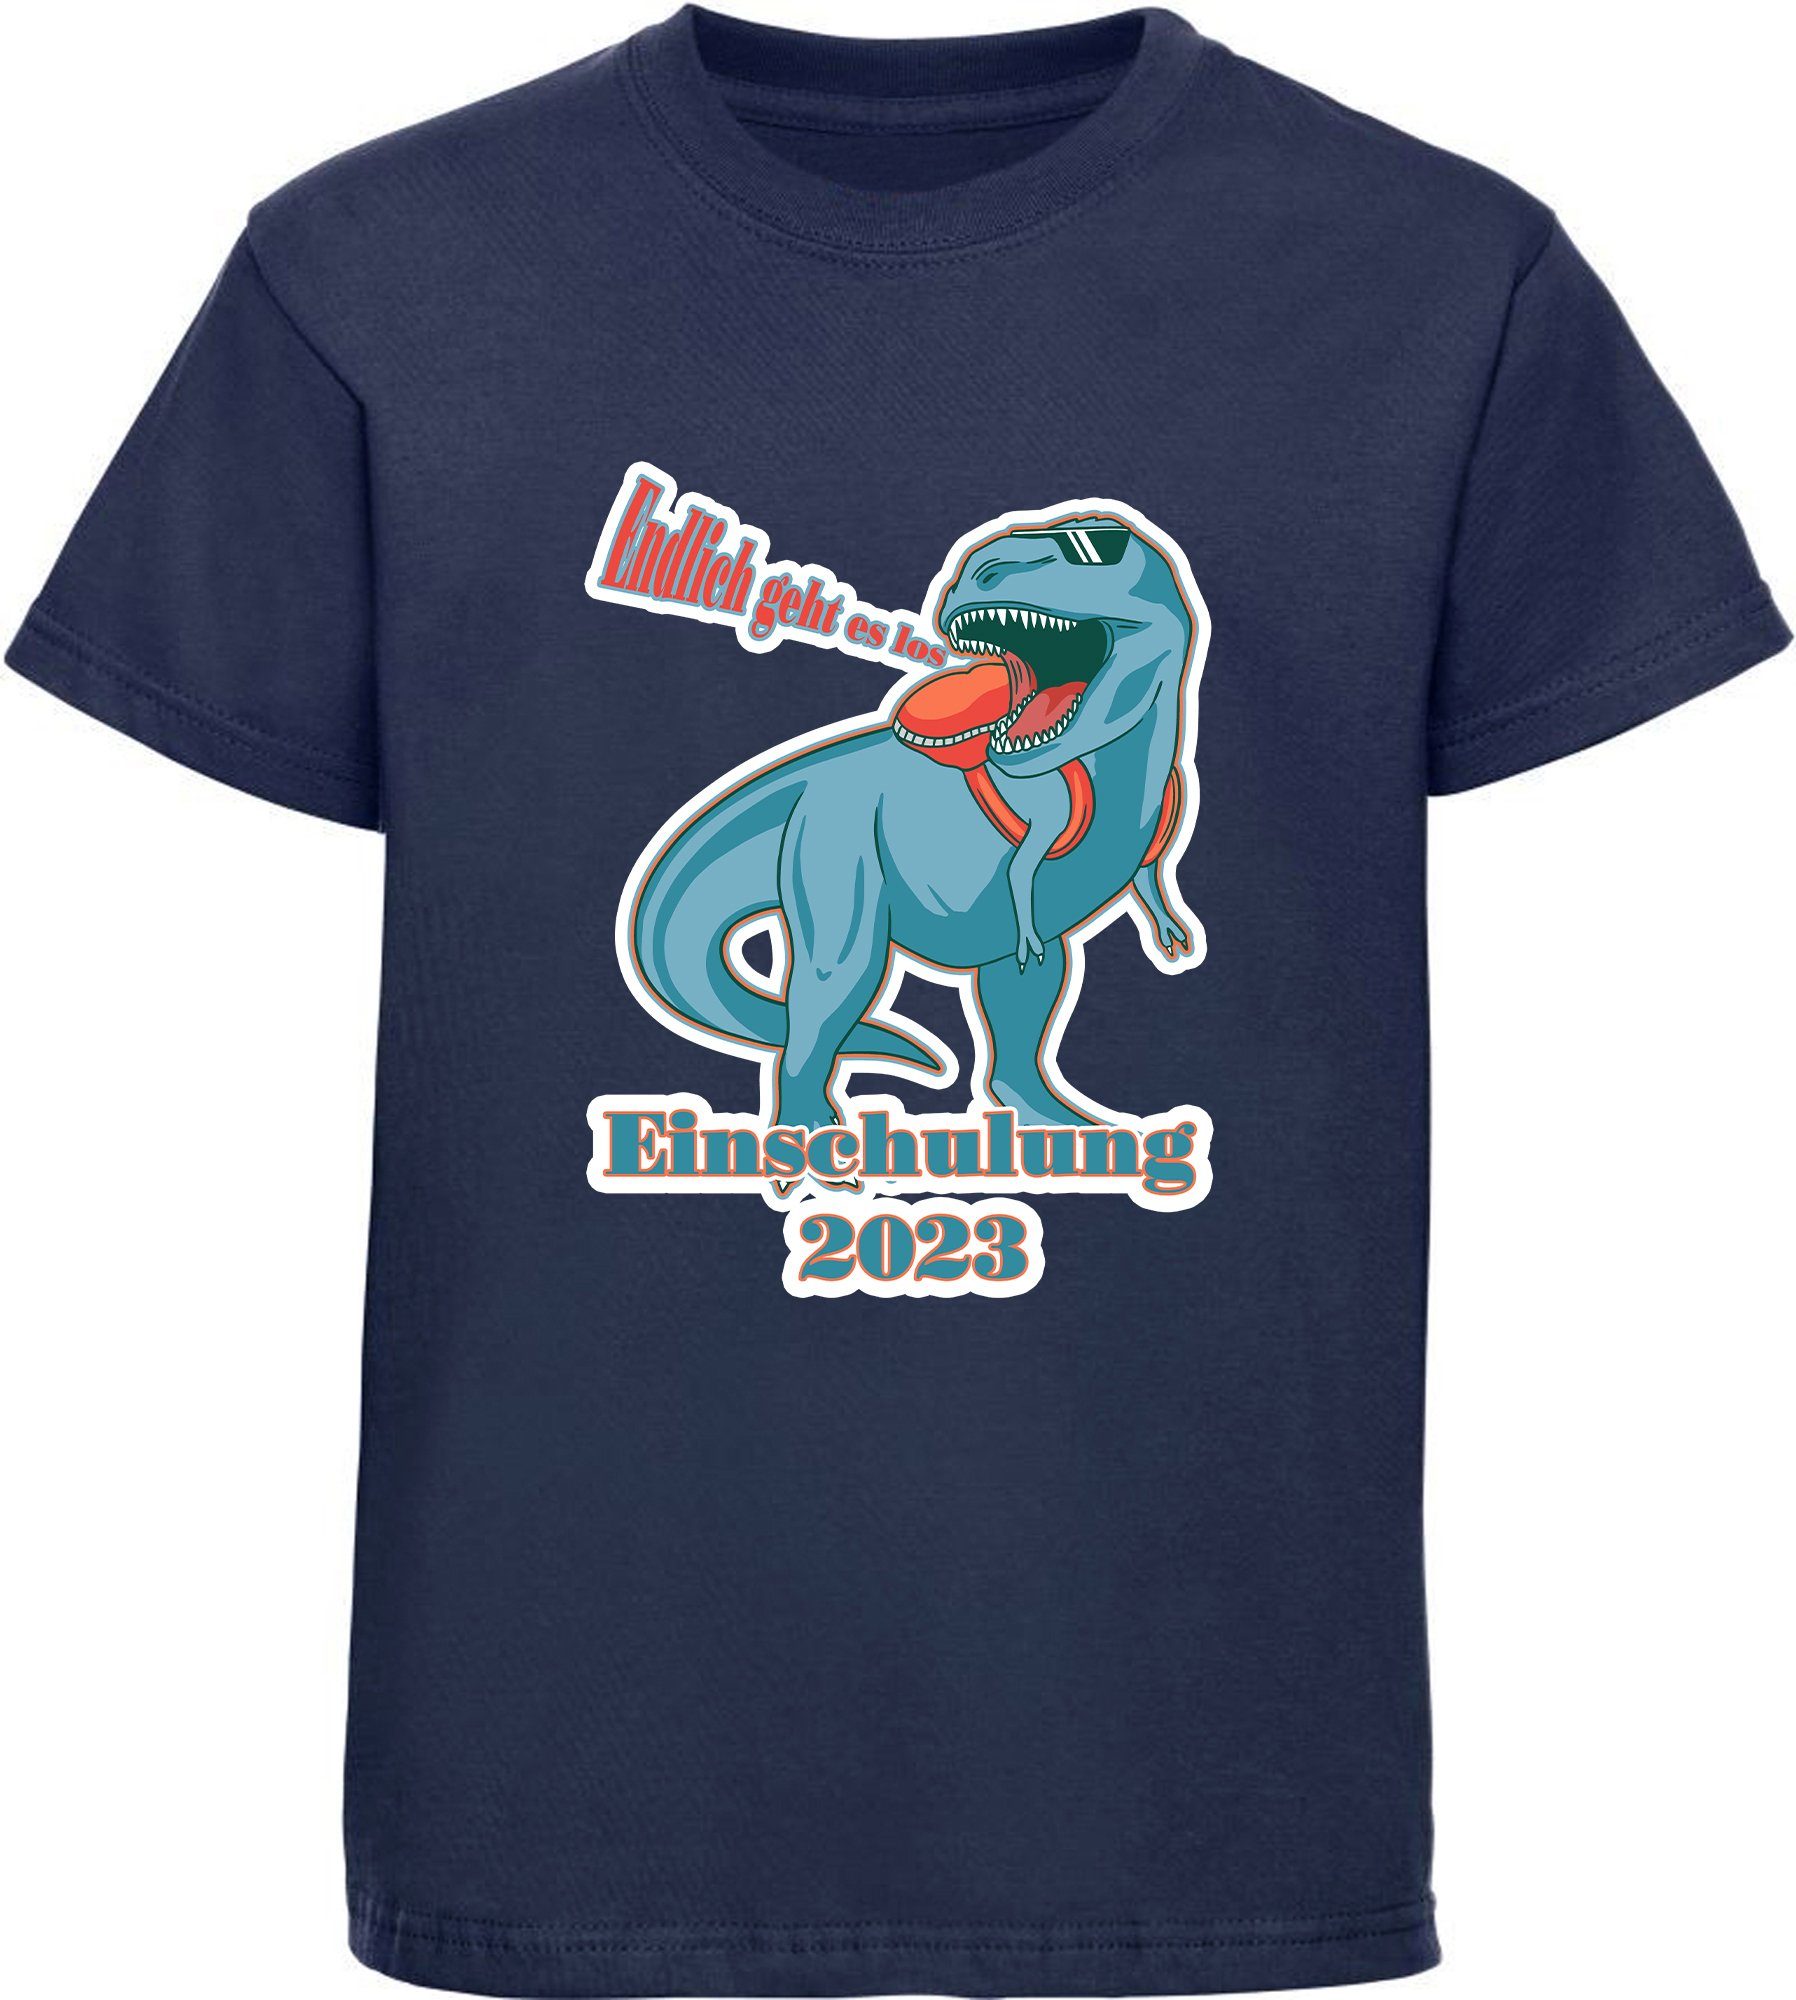 MyDesign24 Print-Shirt bedrucktes Kinder Aufdruck, blau, rot, Baumwollshirt Einschulung T-Rex i37 weiß, los - T-Shirt geht Endlich 2023 schwarz, es